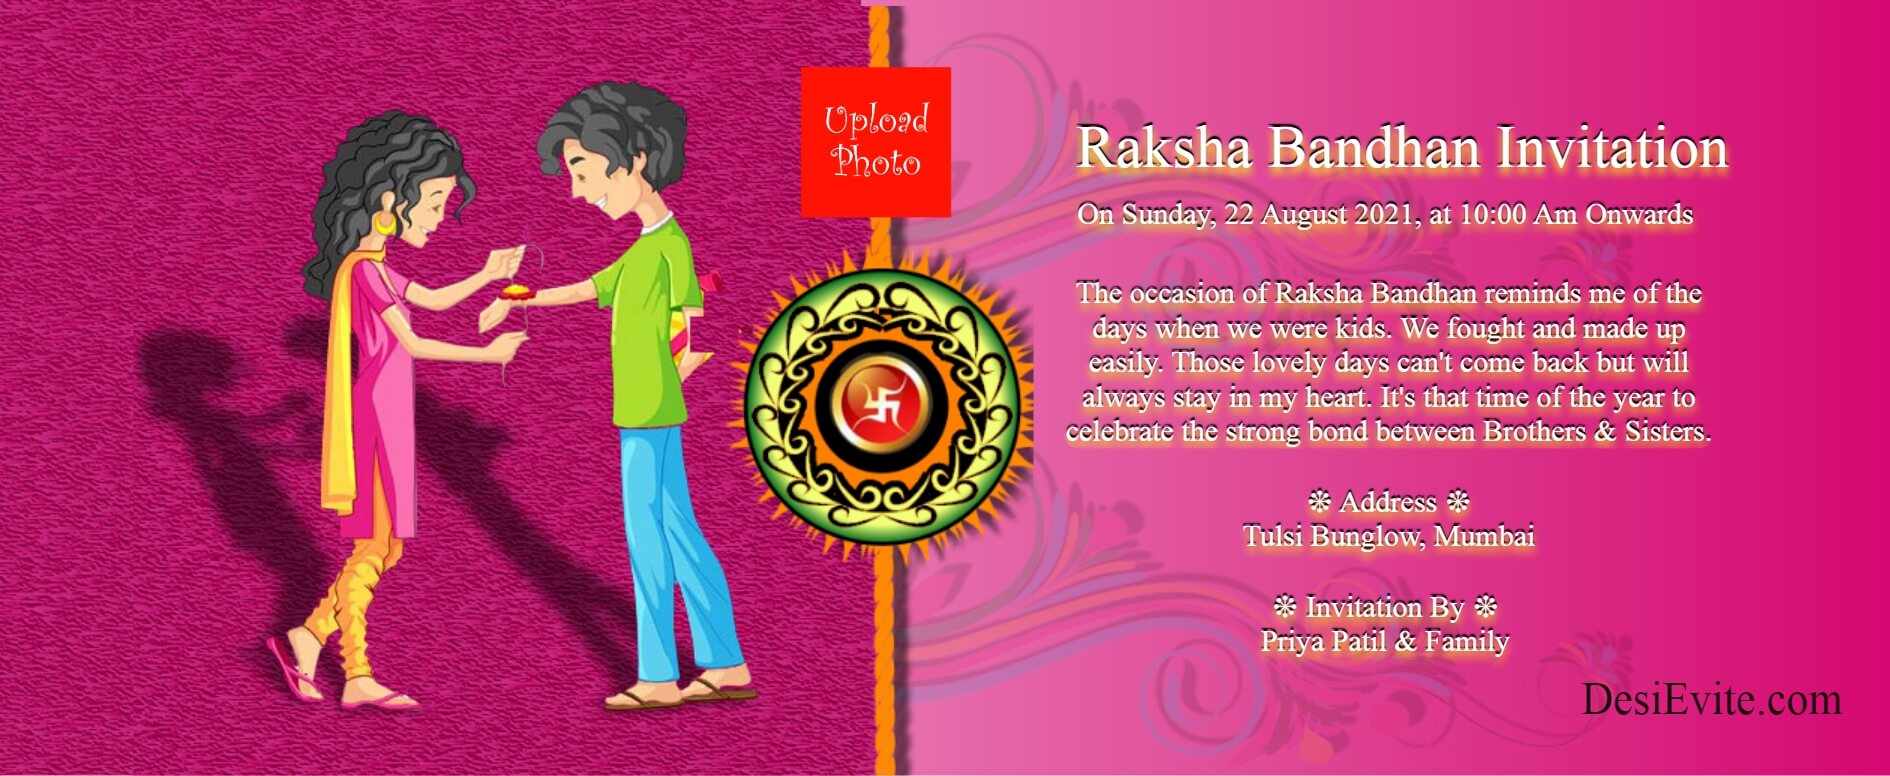 raksha bandhani invitation 5 49 127 136 